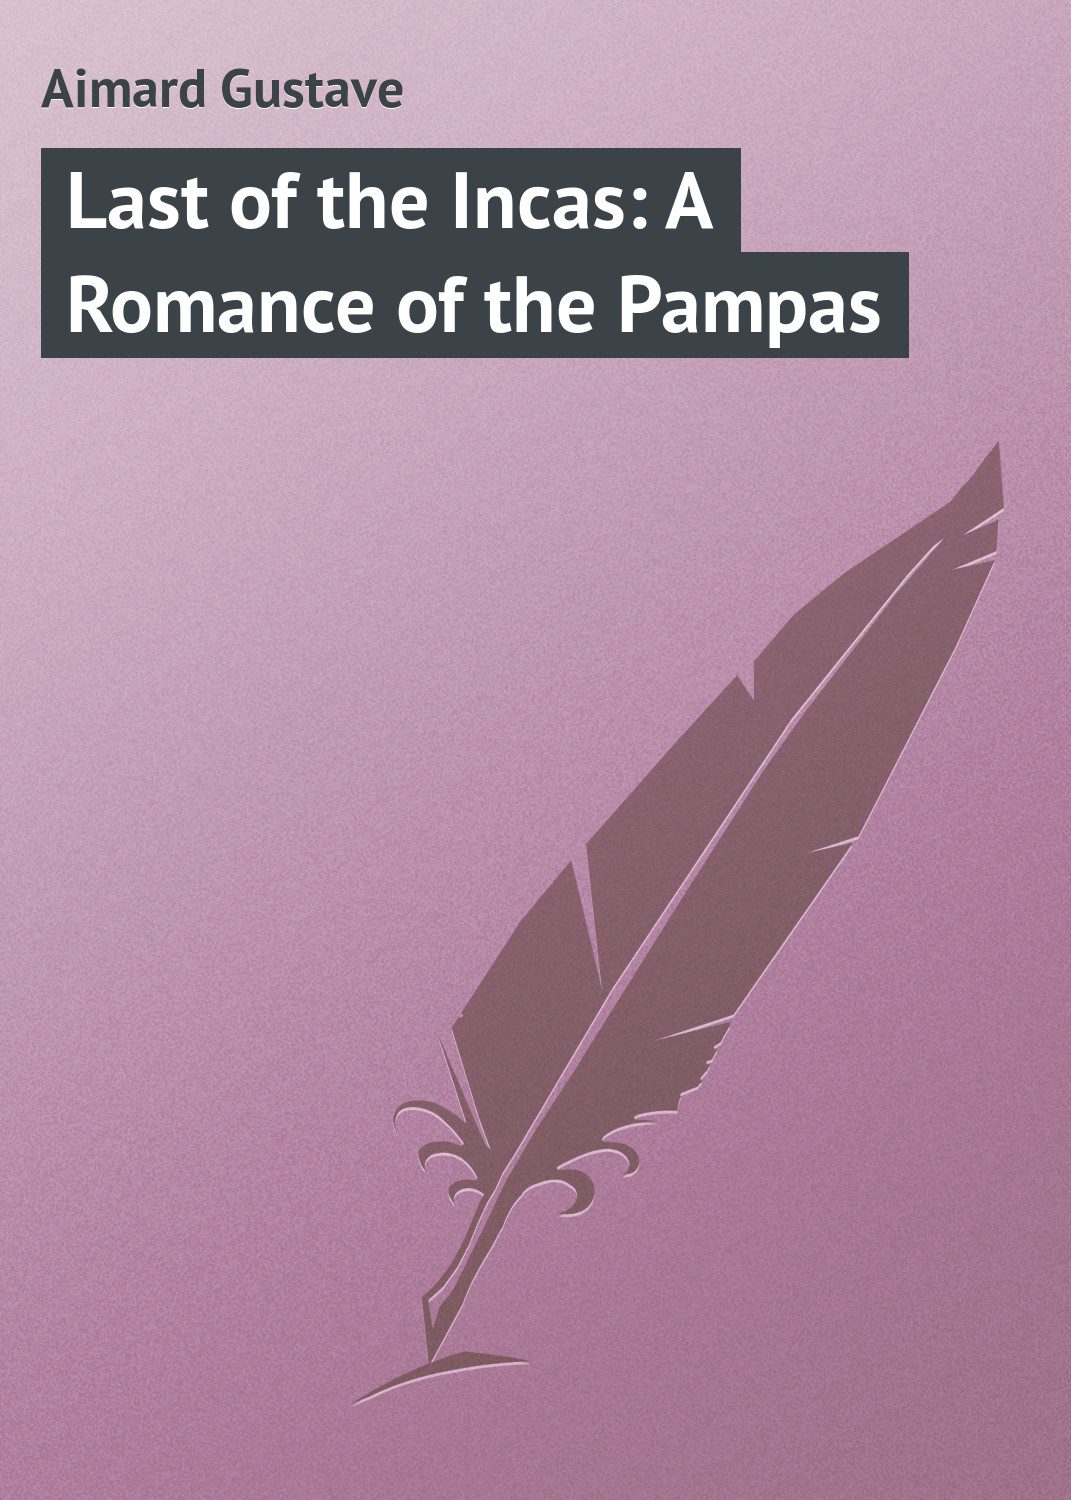 Книга Last of the Incas: A Romance of the Pampas из серии , созданная Gustave Aimard, может относится к жанру Зарубежная классика. Стоимость электронной книги Last of the Incas: A Romance of the Pampas с идентификатором 23149547 составляет 5.99 руб.